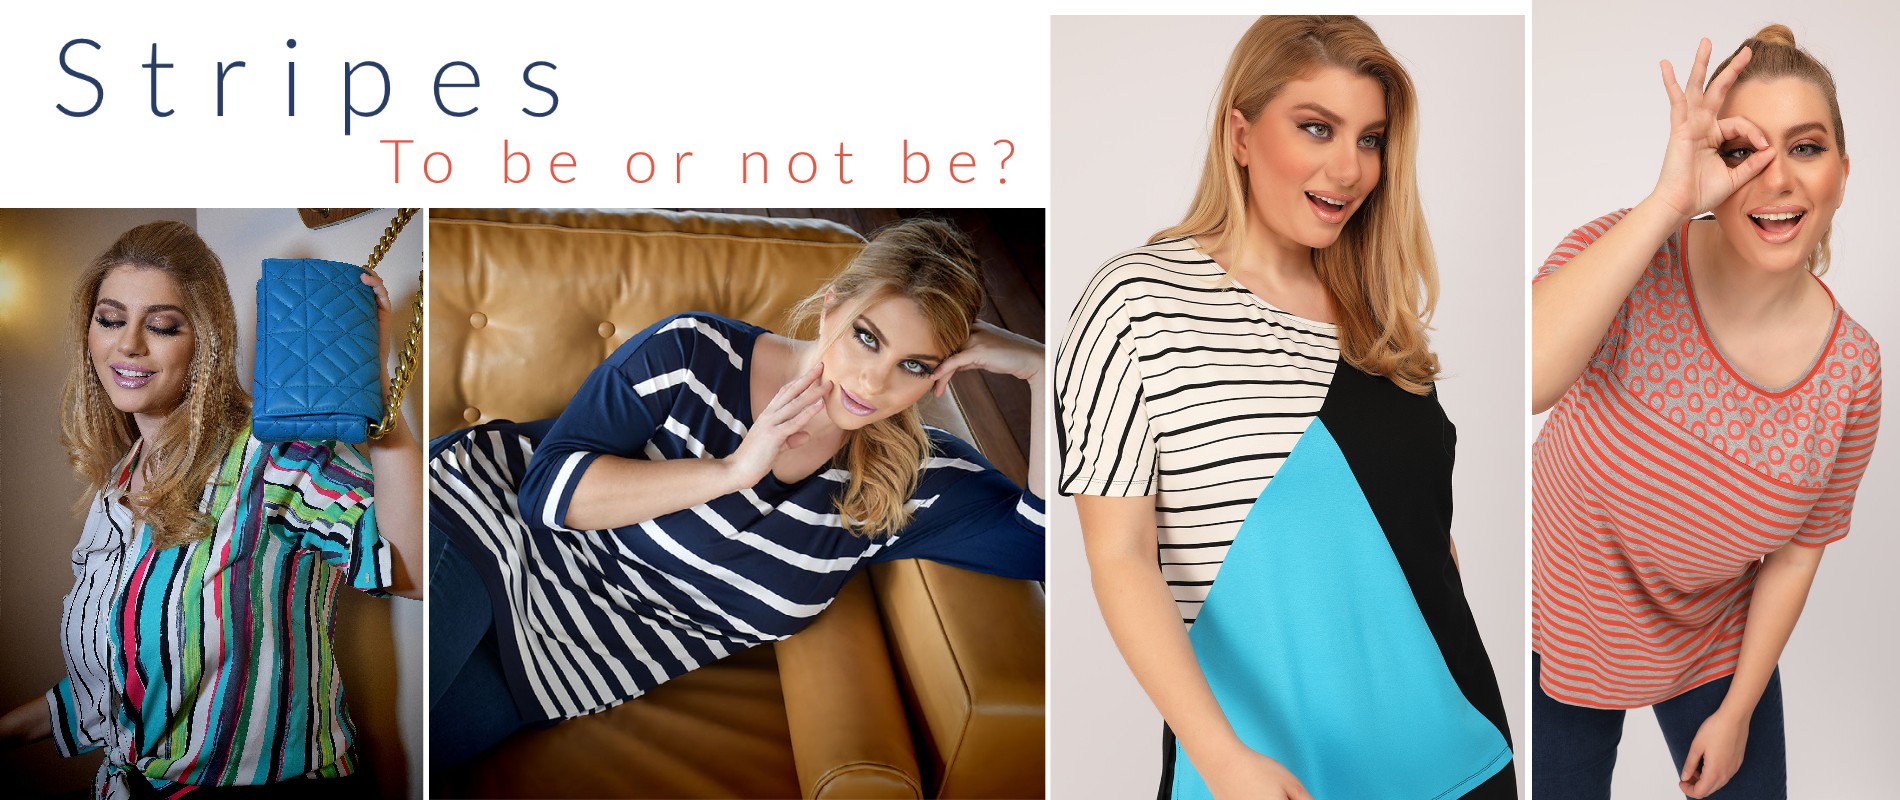 Ρίγες σε plus size γυναικεία ρούχα.. A yes or a no?